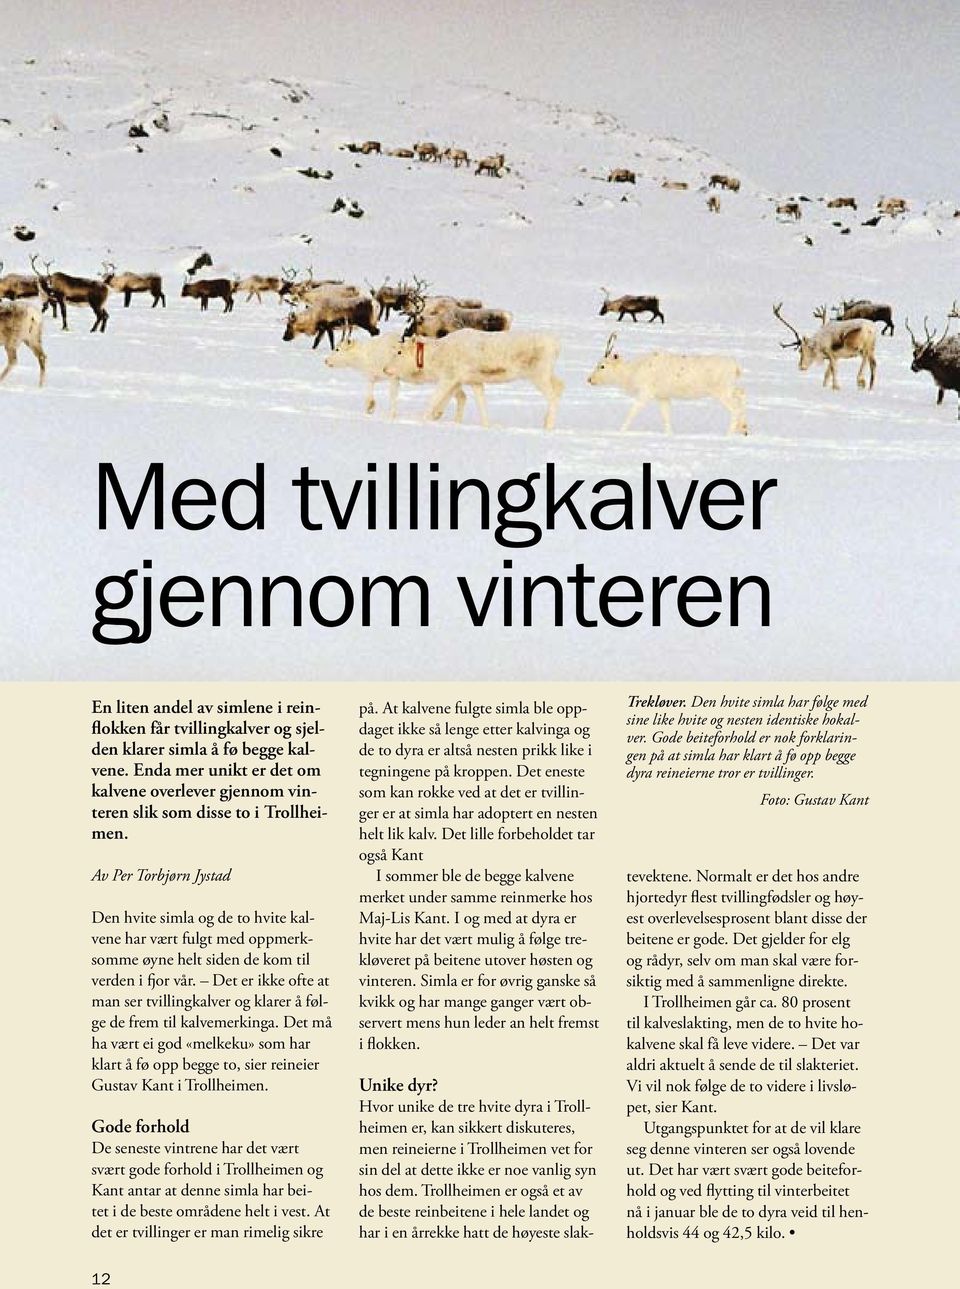 Av Per Torbjørn Jystad Den hvite simla og de to hvite kalvene har vært fulgt med oppmerksomme øyne helt siden de kom til verden i fjor vår.